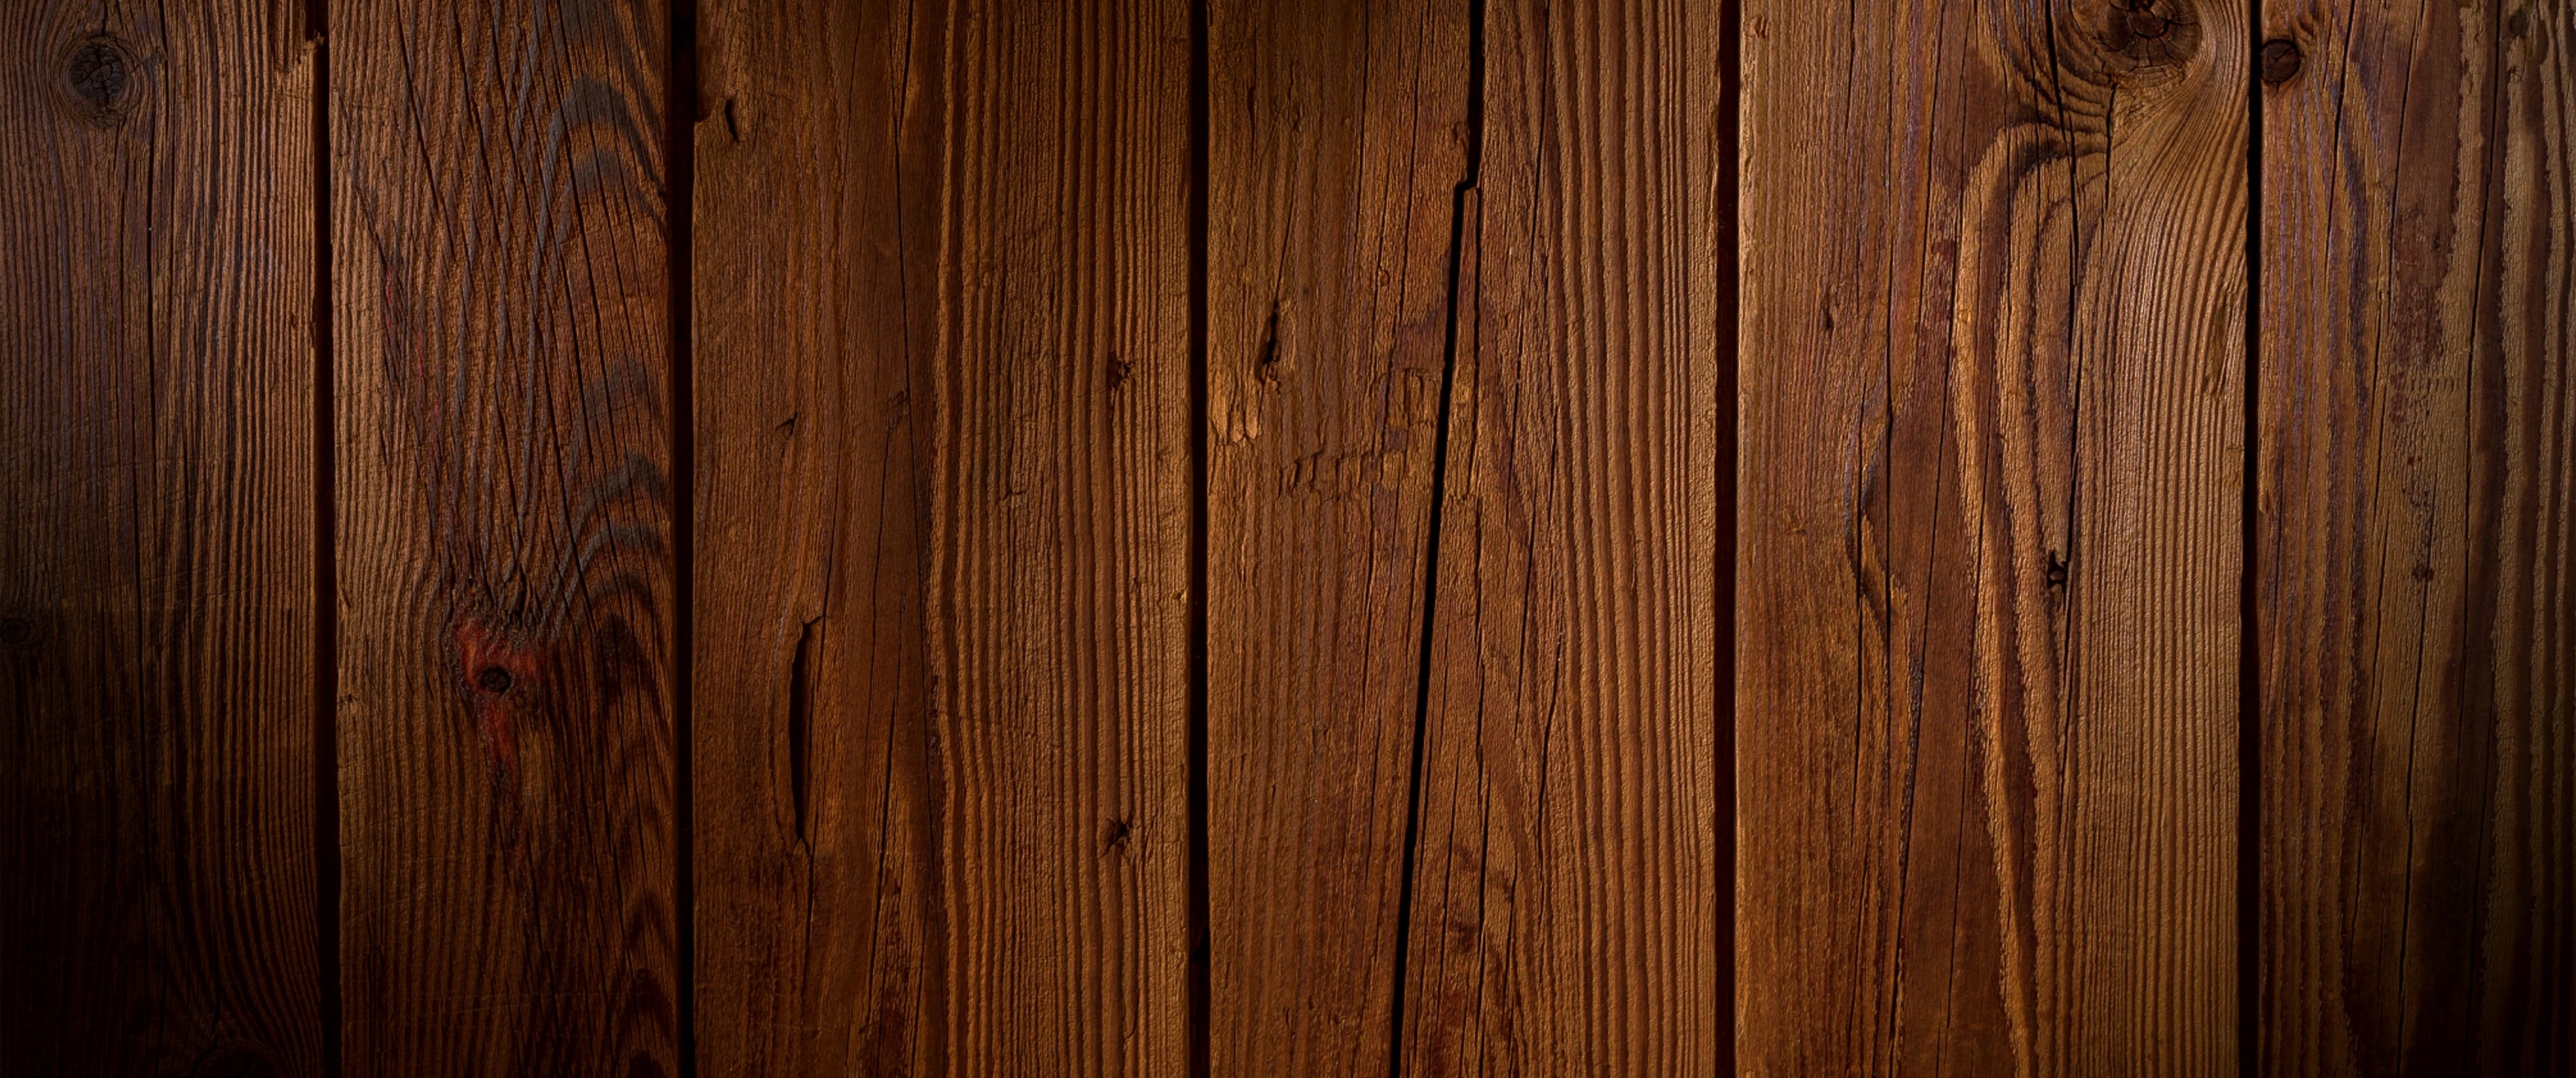 Hình nền gỗ sẽ mang lại cho bạn một không gian sống ấm cúng và tự nhiên. Sự hòa quyện giữa kết cấu tự nhiên của gỗ và màu sắc đa dạng sẽ mang lại cho bạn một không gian trang trí hoàn hảo. Thử xem các mẫu hình nền gỗ của chúng tôi để cảm nhận rõ ràng hơn.